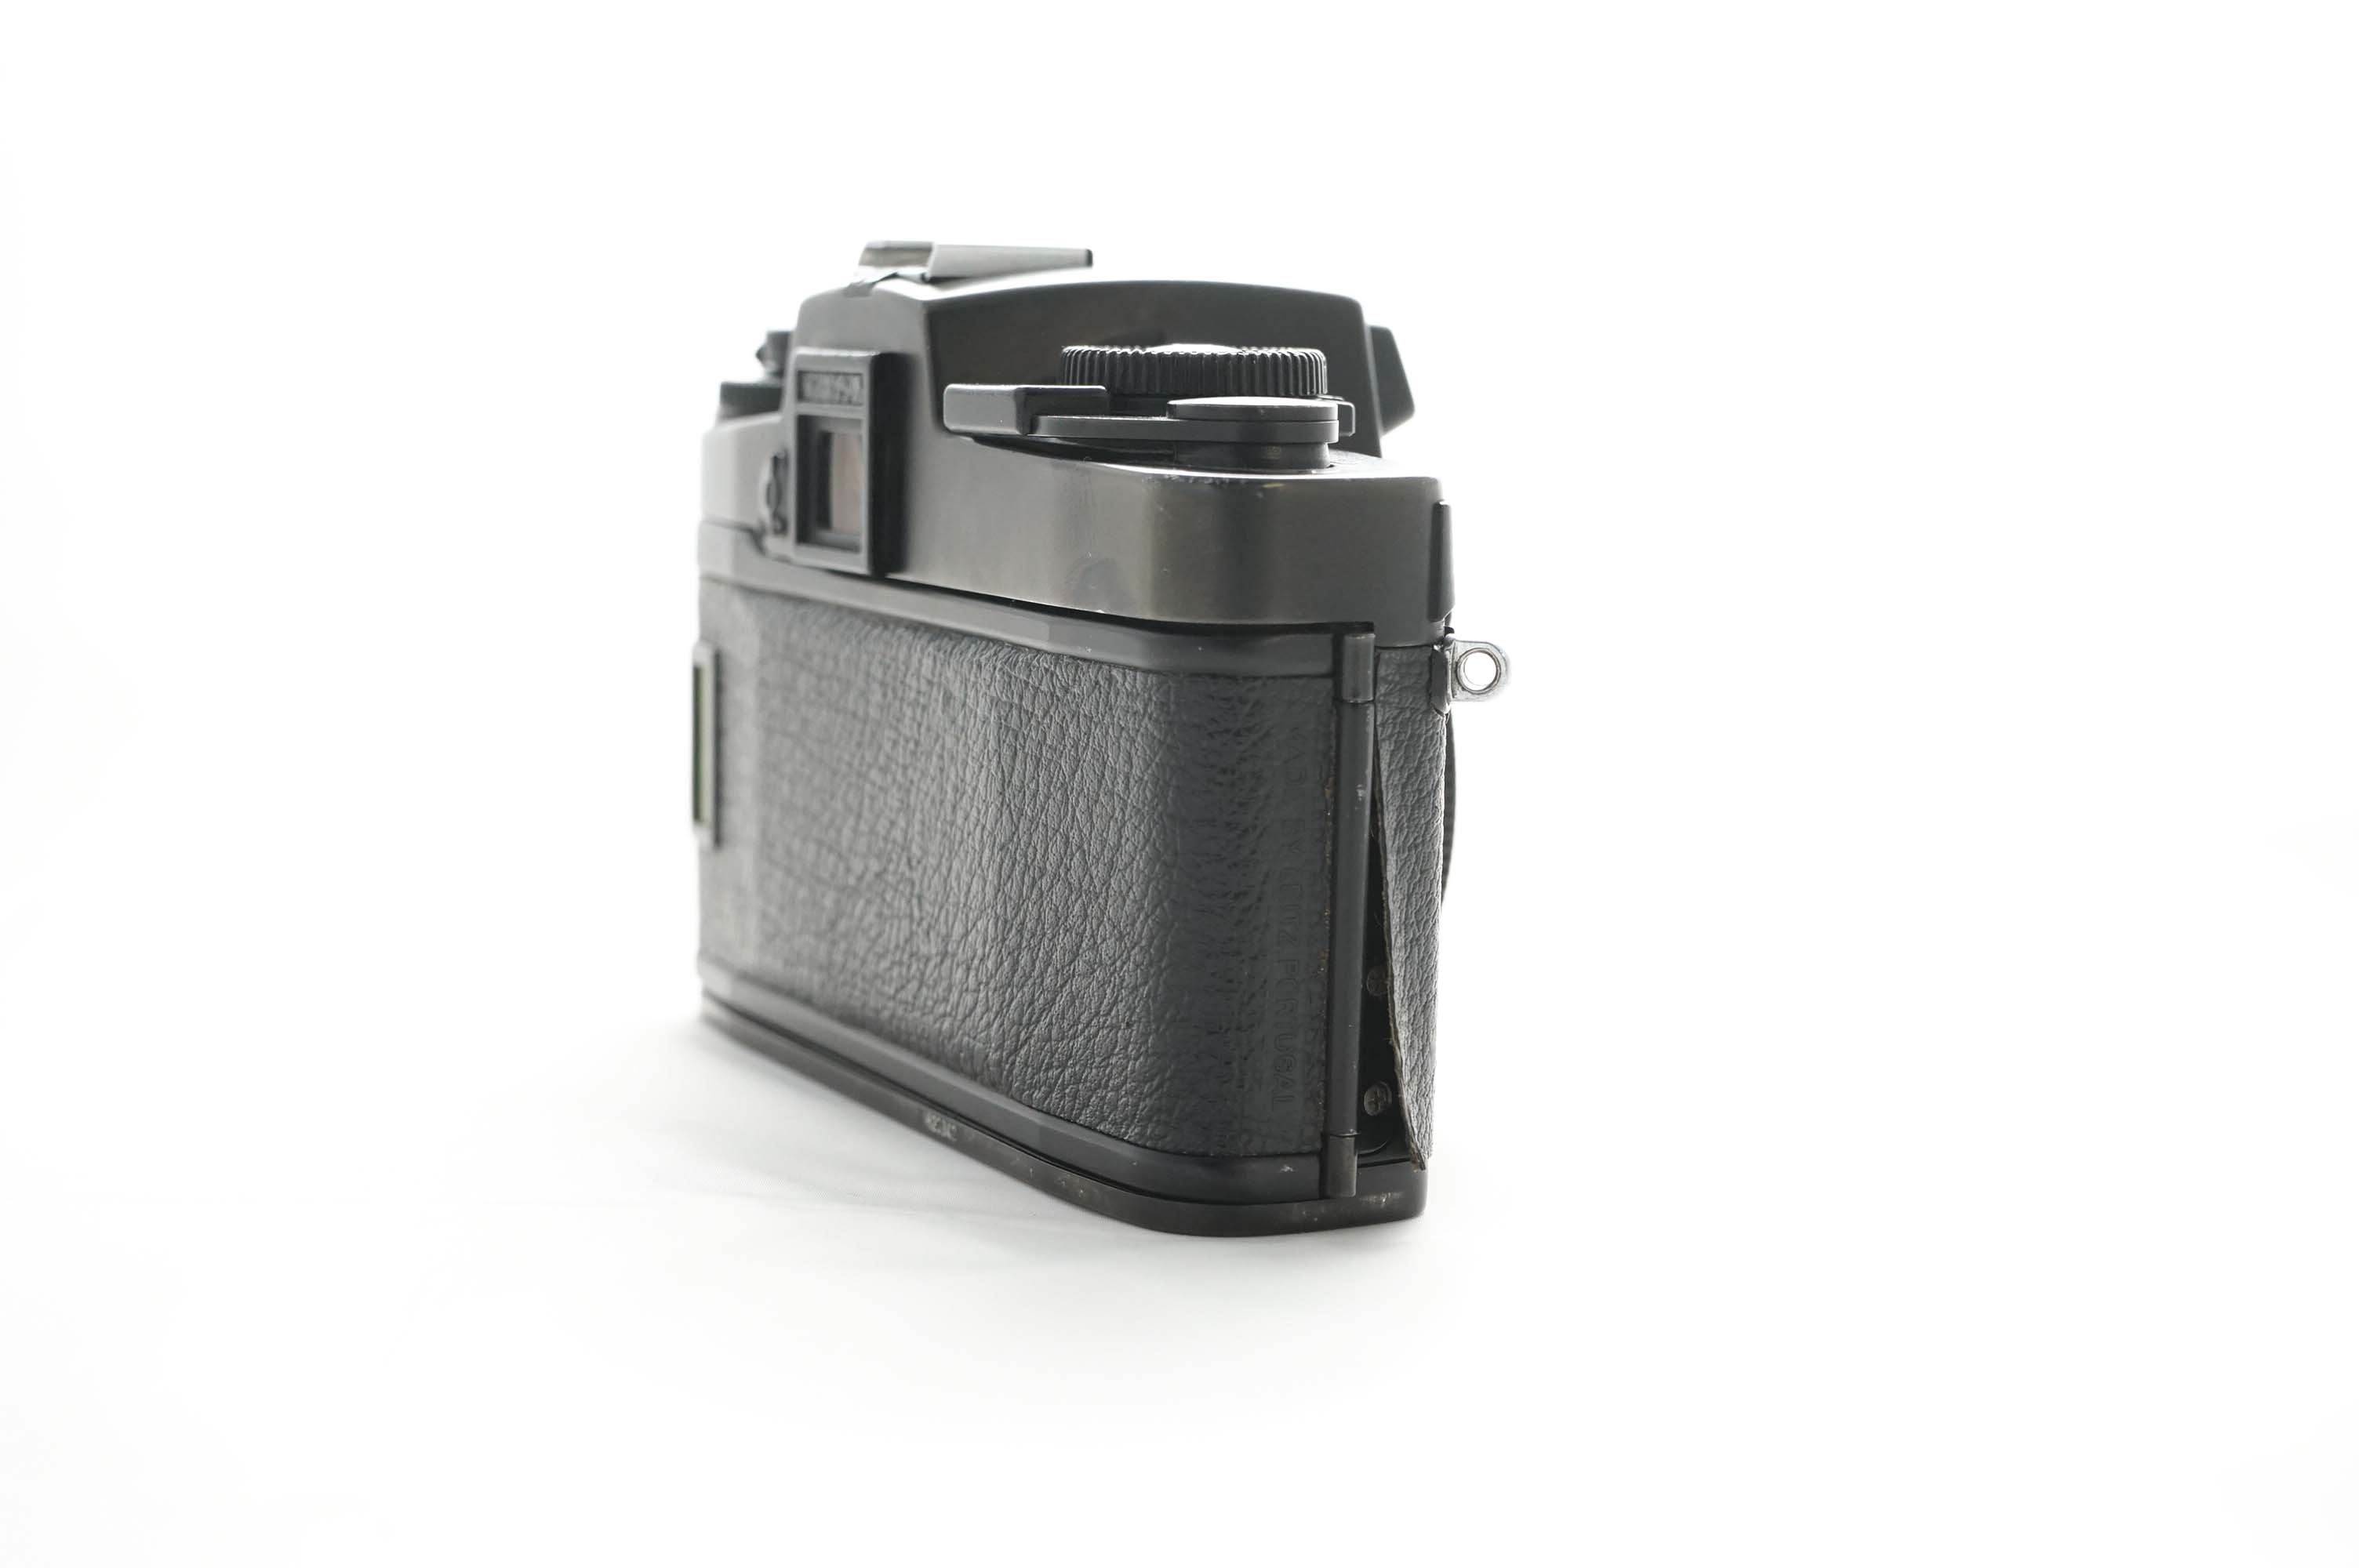 Leica R4 gebraucht Bild 02